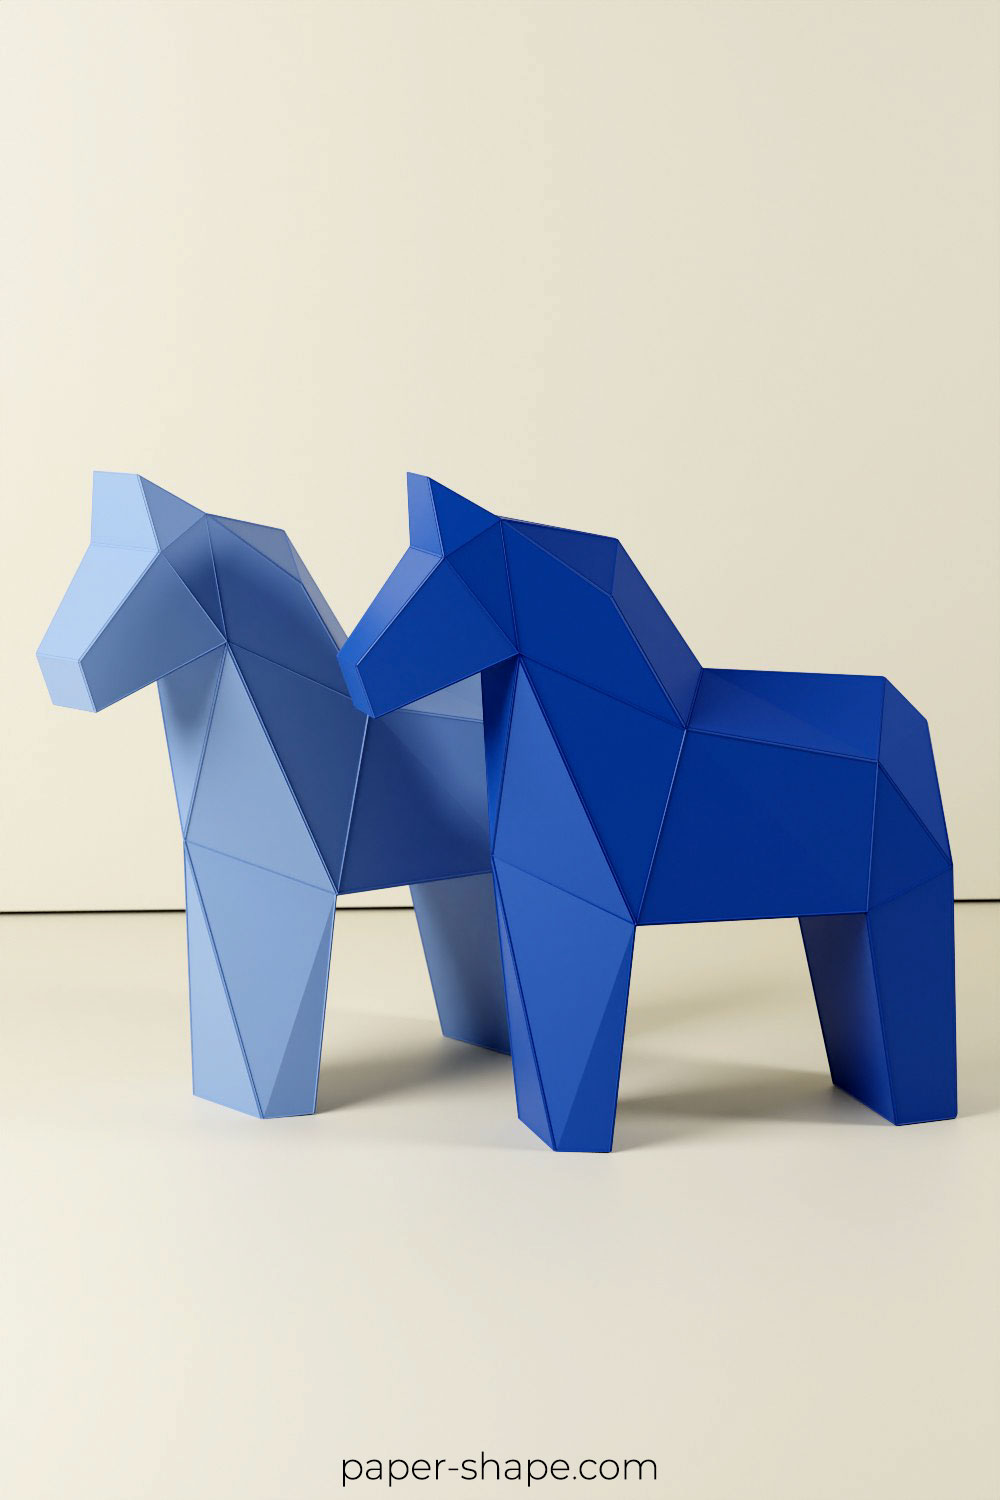 Selbstgebastelte Dalapferde aus Papier in zwei Blautönen